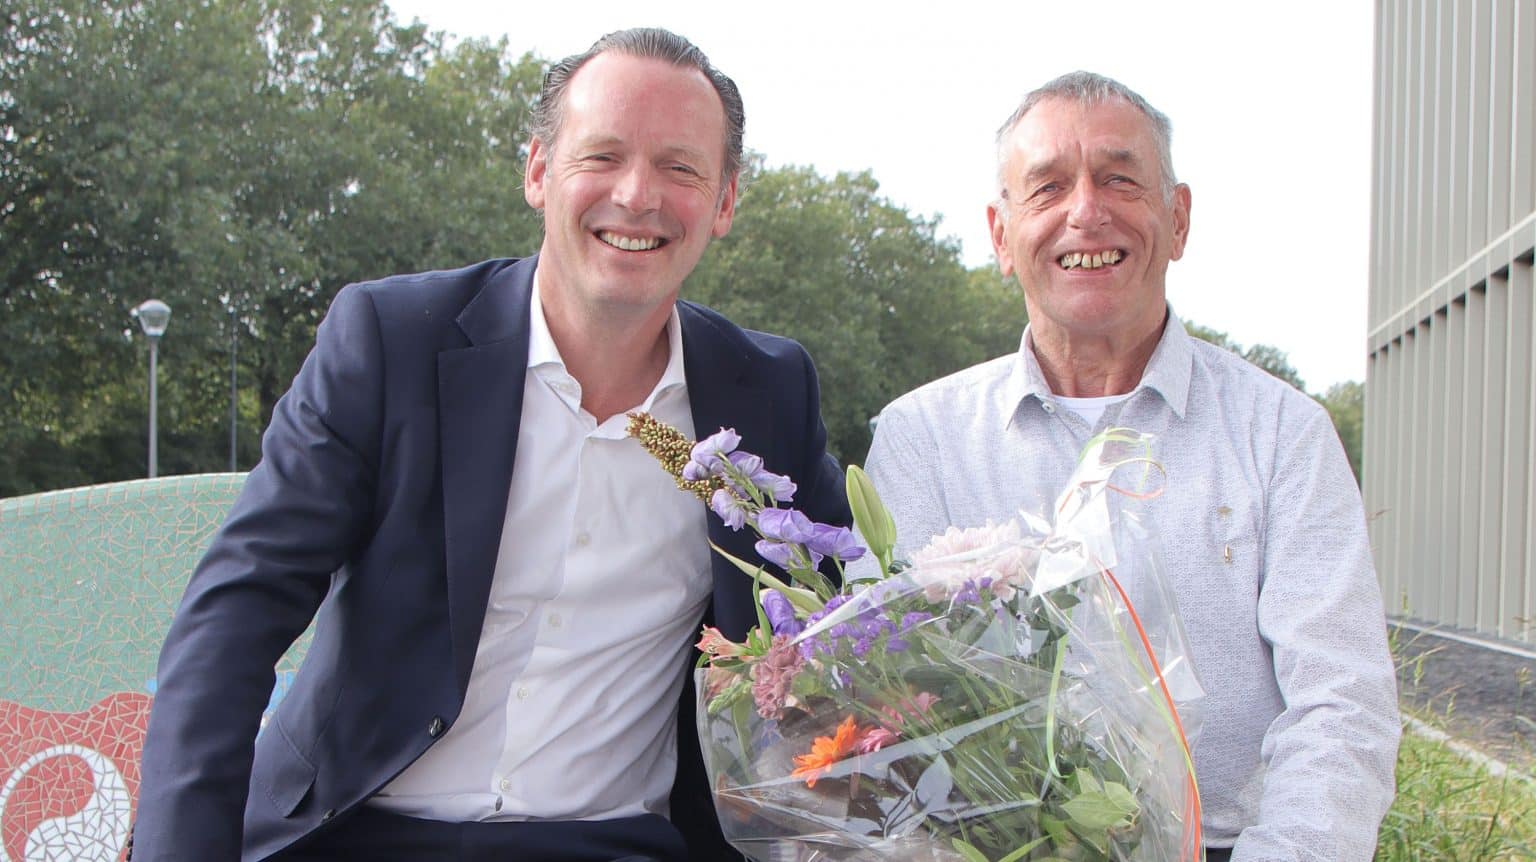 Op de foto staan Sjoerd van het Erve (directeur van Weener XL, links op de foto) en Ad van Erp (rechts op de foto). Ad van Erp houdt een bos bloemen vast.